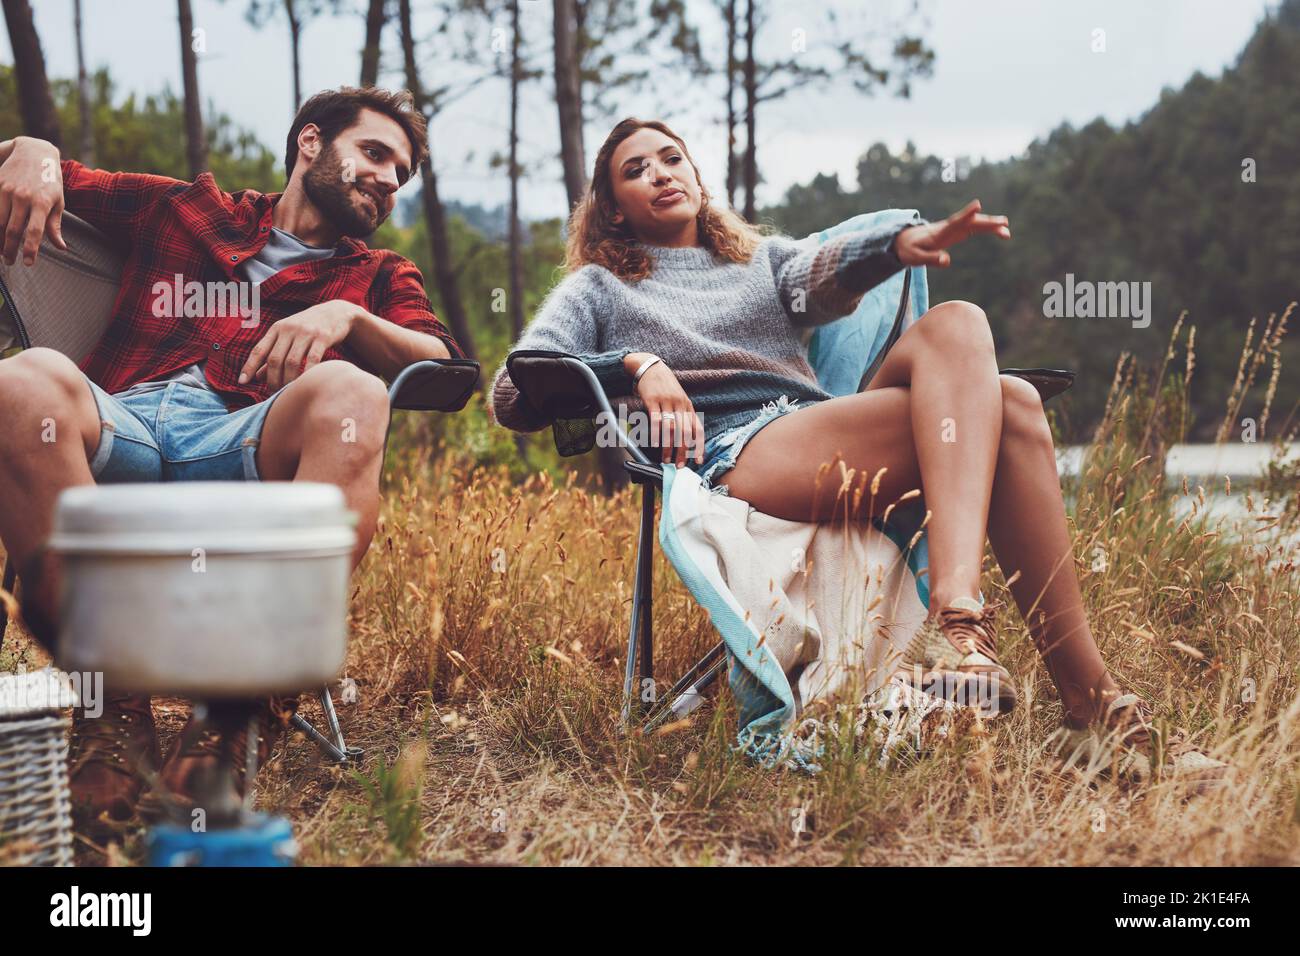 Relajada pareja de jóvenes acampando junto al lago. Mujer joven señalando su punto de vista mientras estaba sentada con su novio en su campamento. Foto de stock